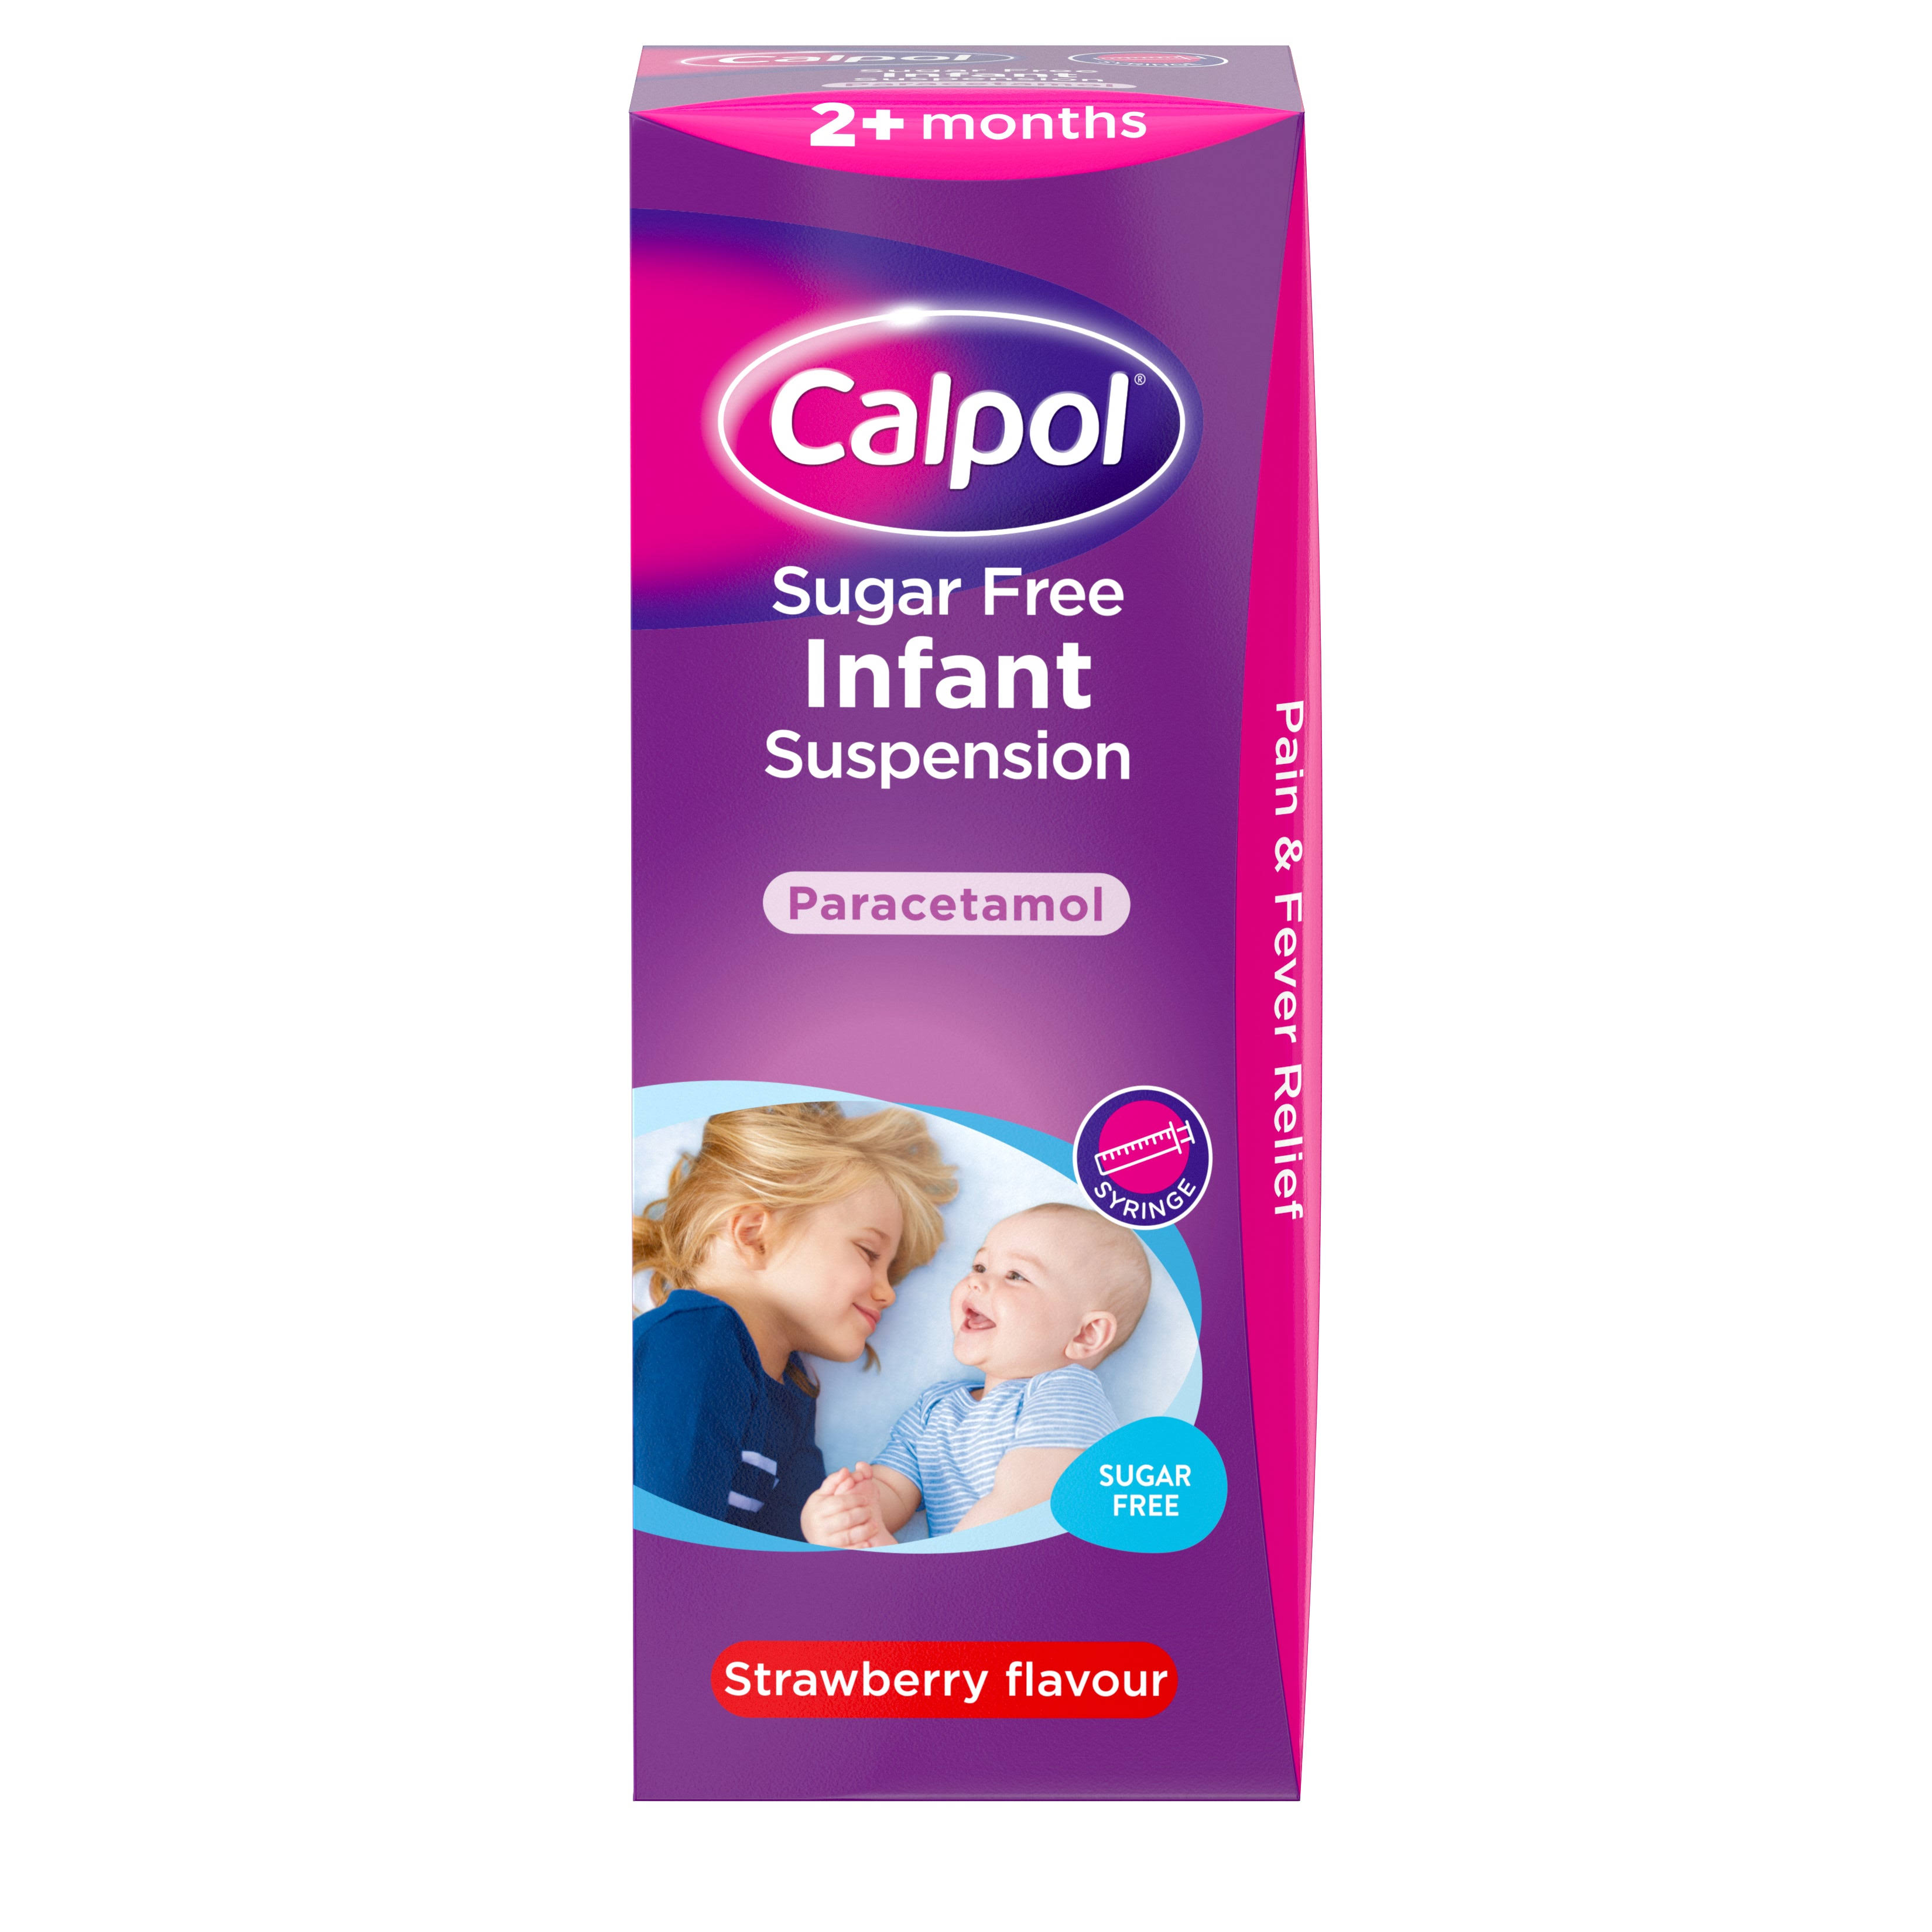 Calpol Infant Paracetamol Suspension - Strawberry Flavour, 2 Plus Months, 100ml